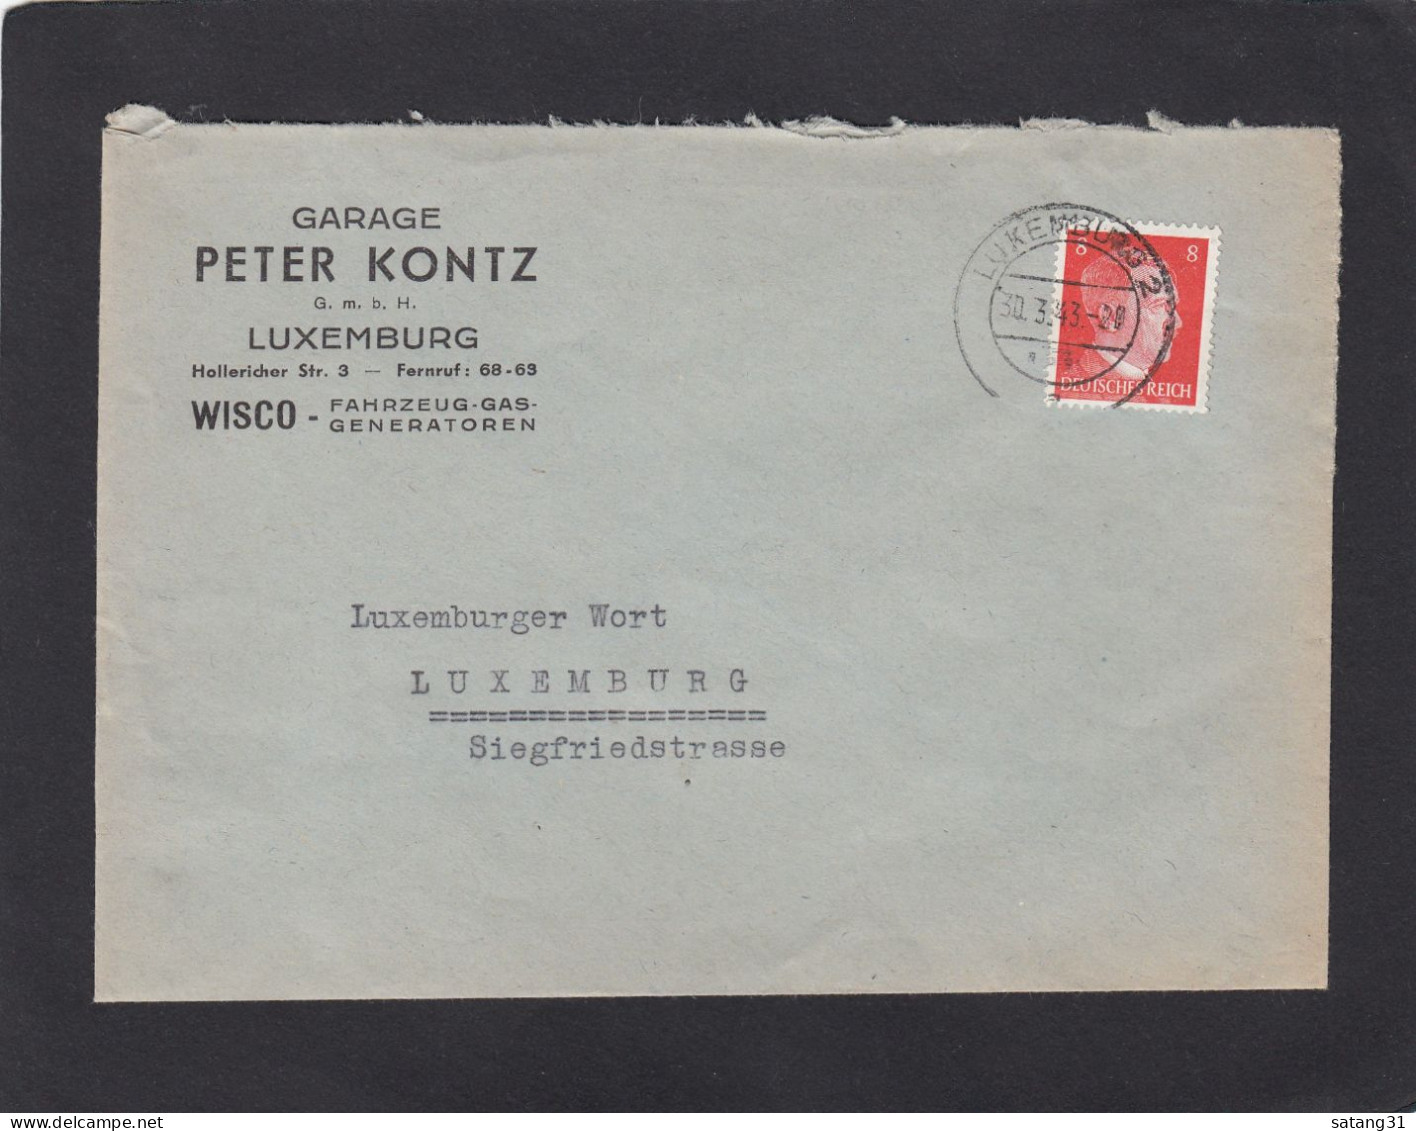 GARAGE PETER KONTZ G.M.B.H., LUXEMBURG. WISCO - FAHRZEUG-GAS-GENERATOREN. - 1940-1944 German Occupation